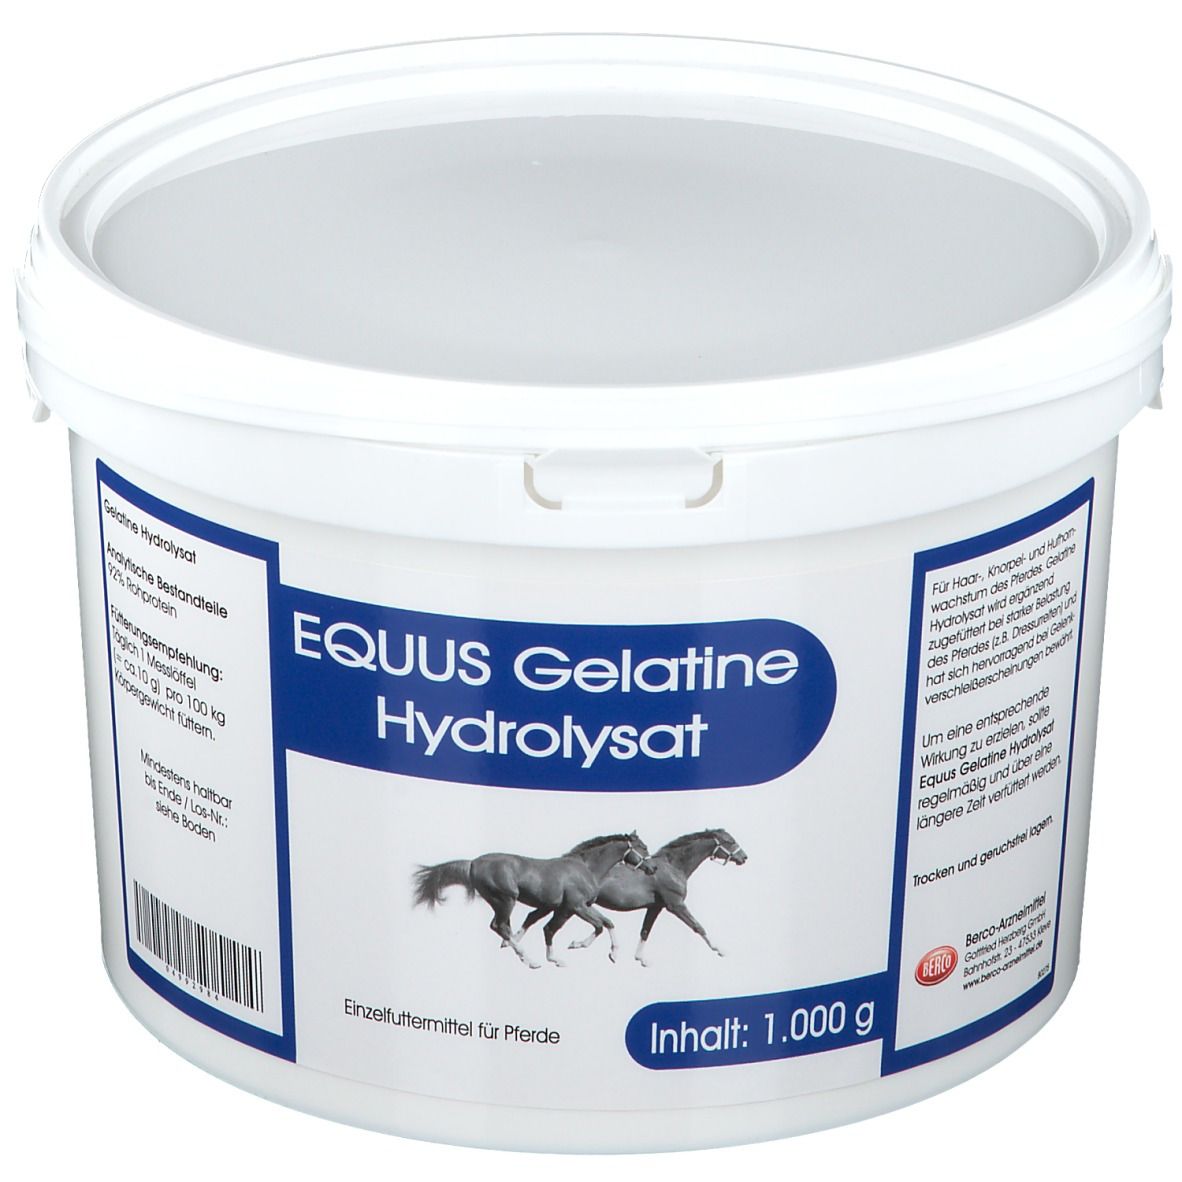 Image of EQUUS Gelatine Hydrolysat